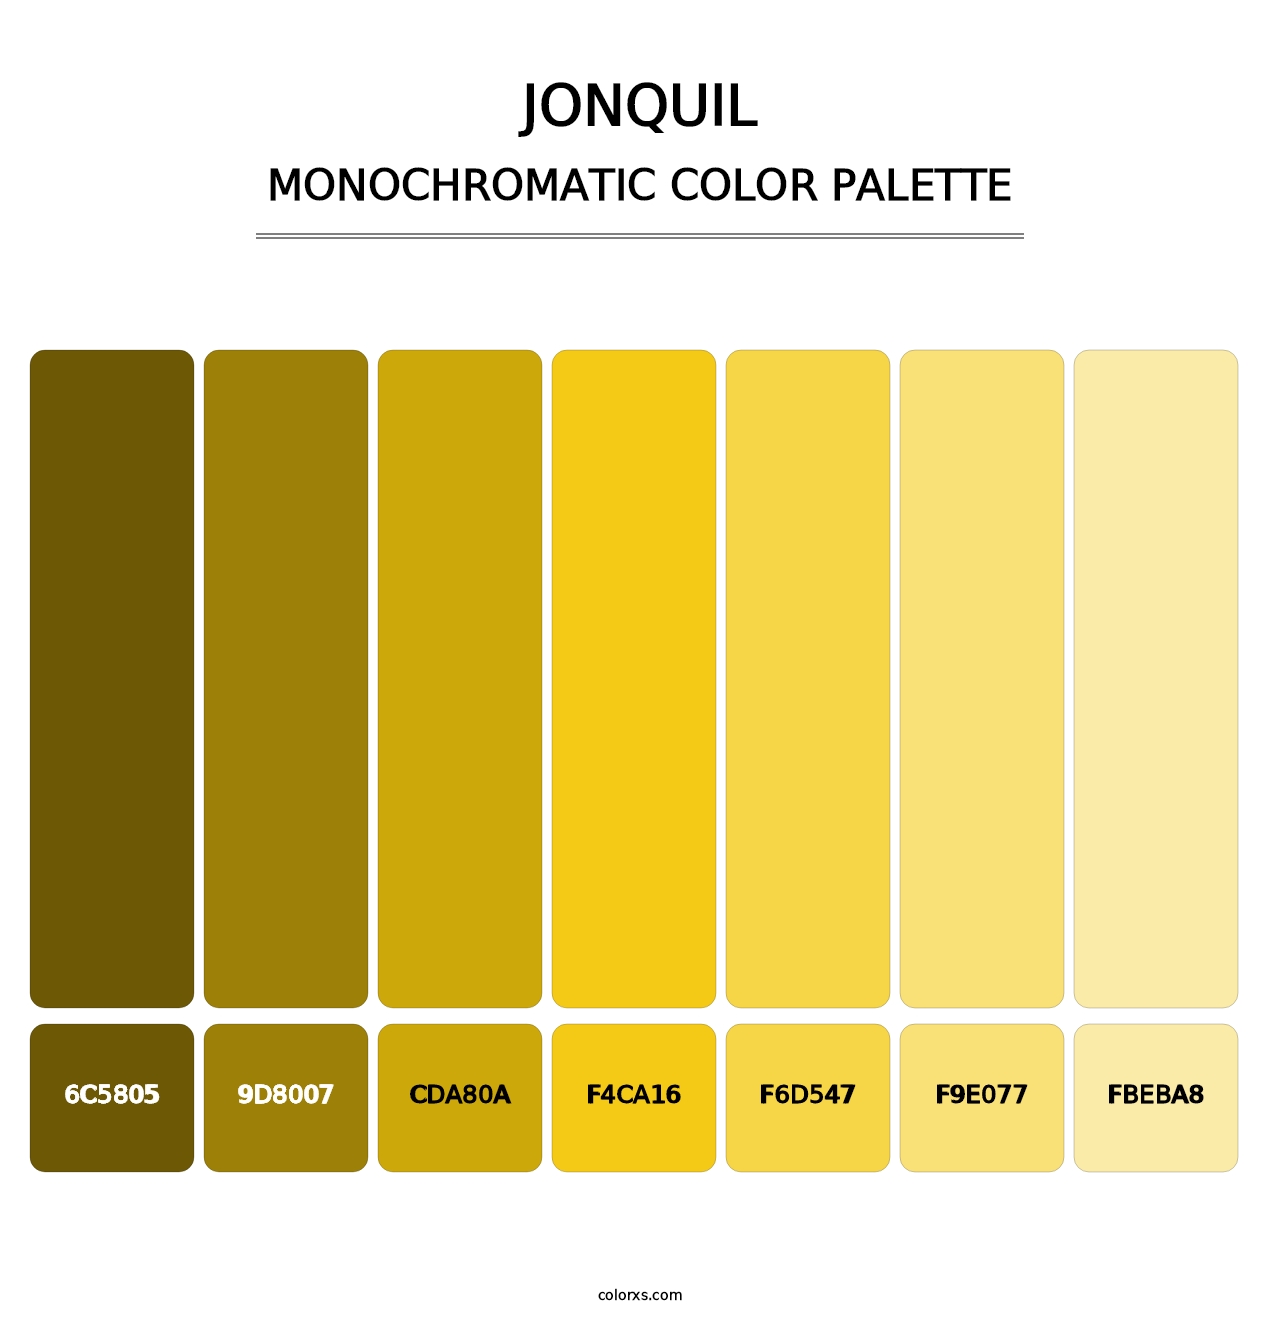 Jonquil - Monochromatic Color Palette